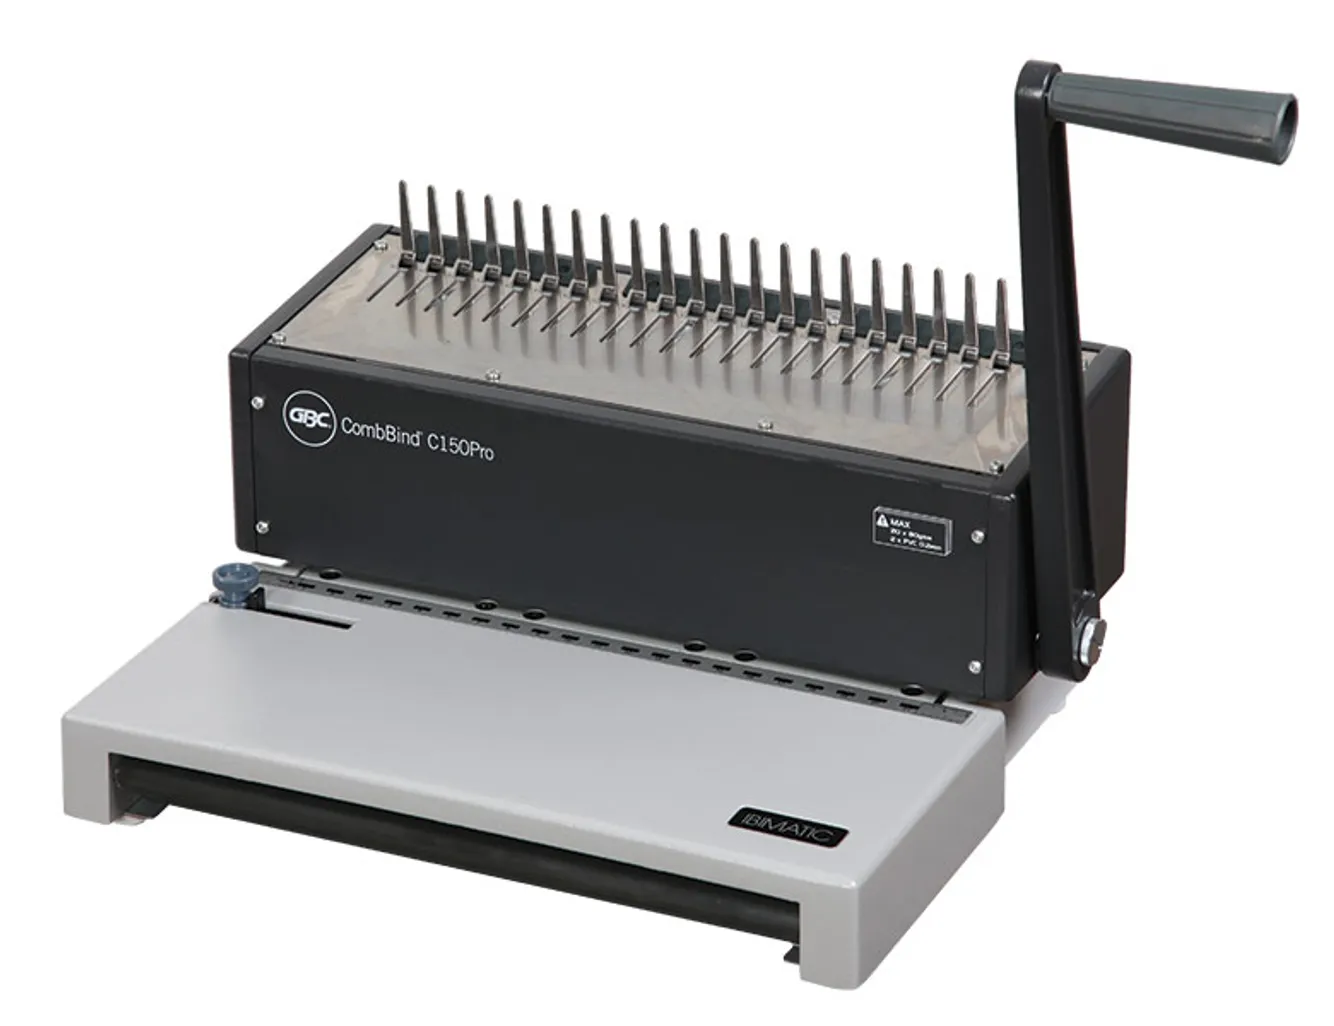 c150 pro comb binding machine